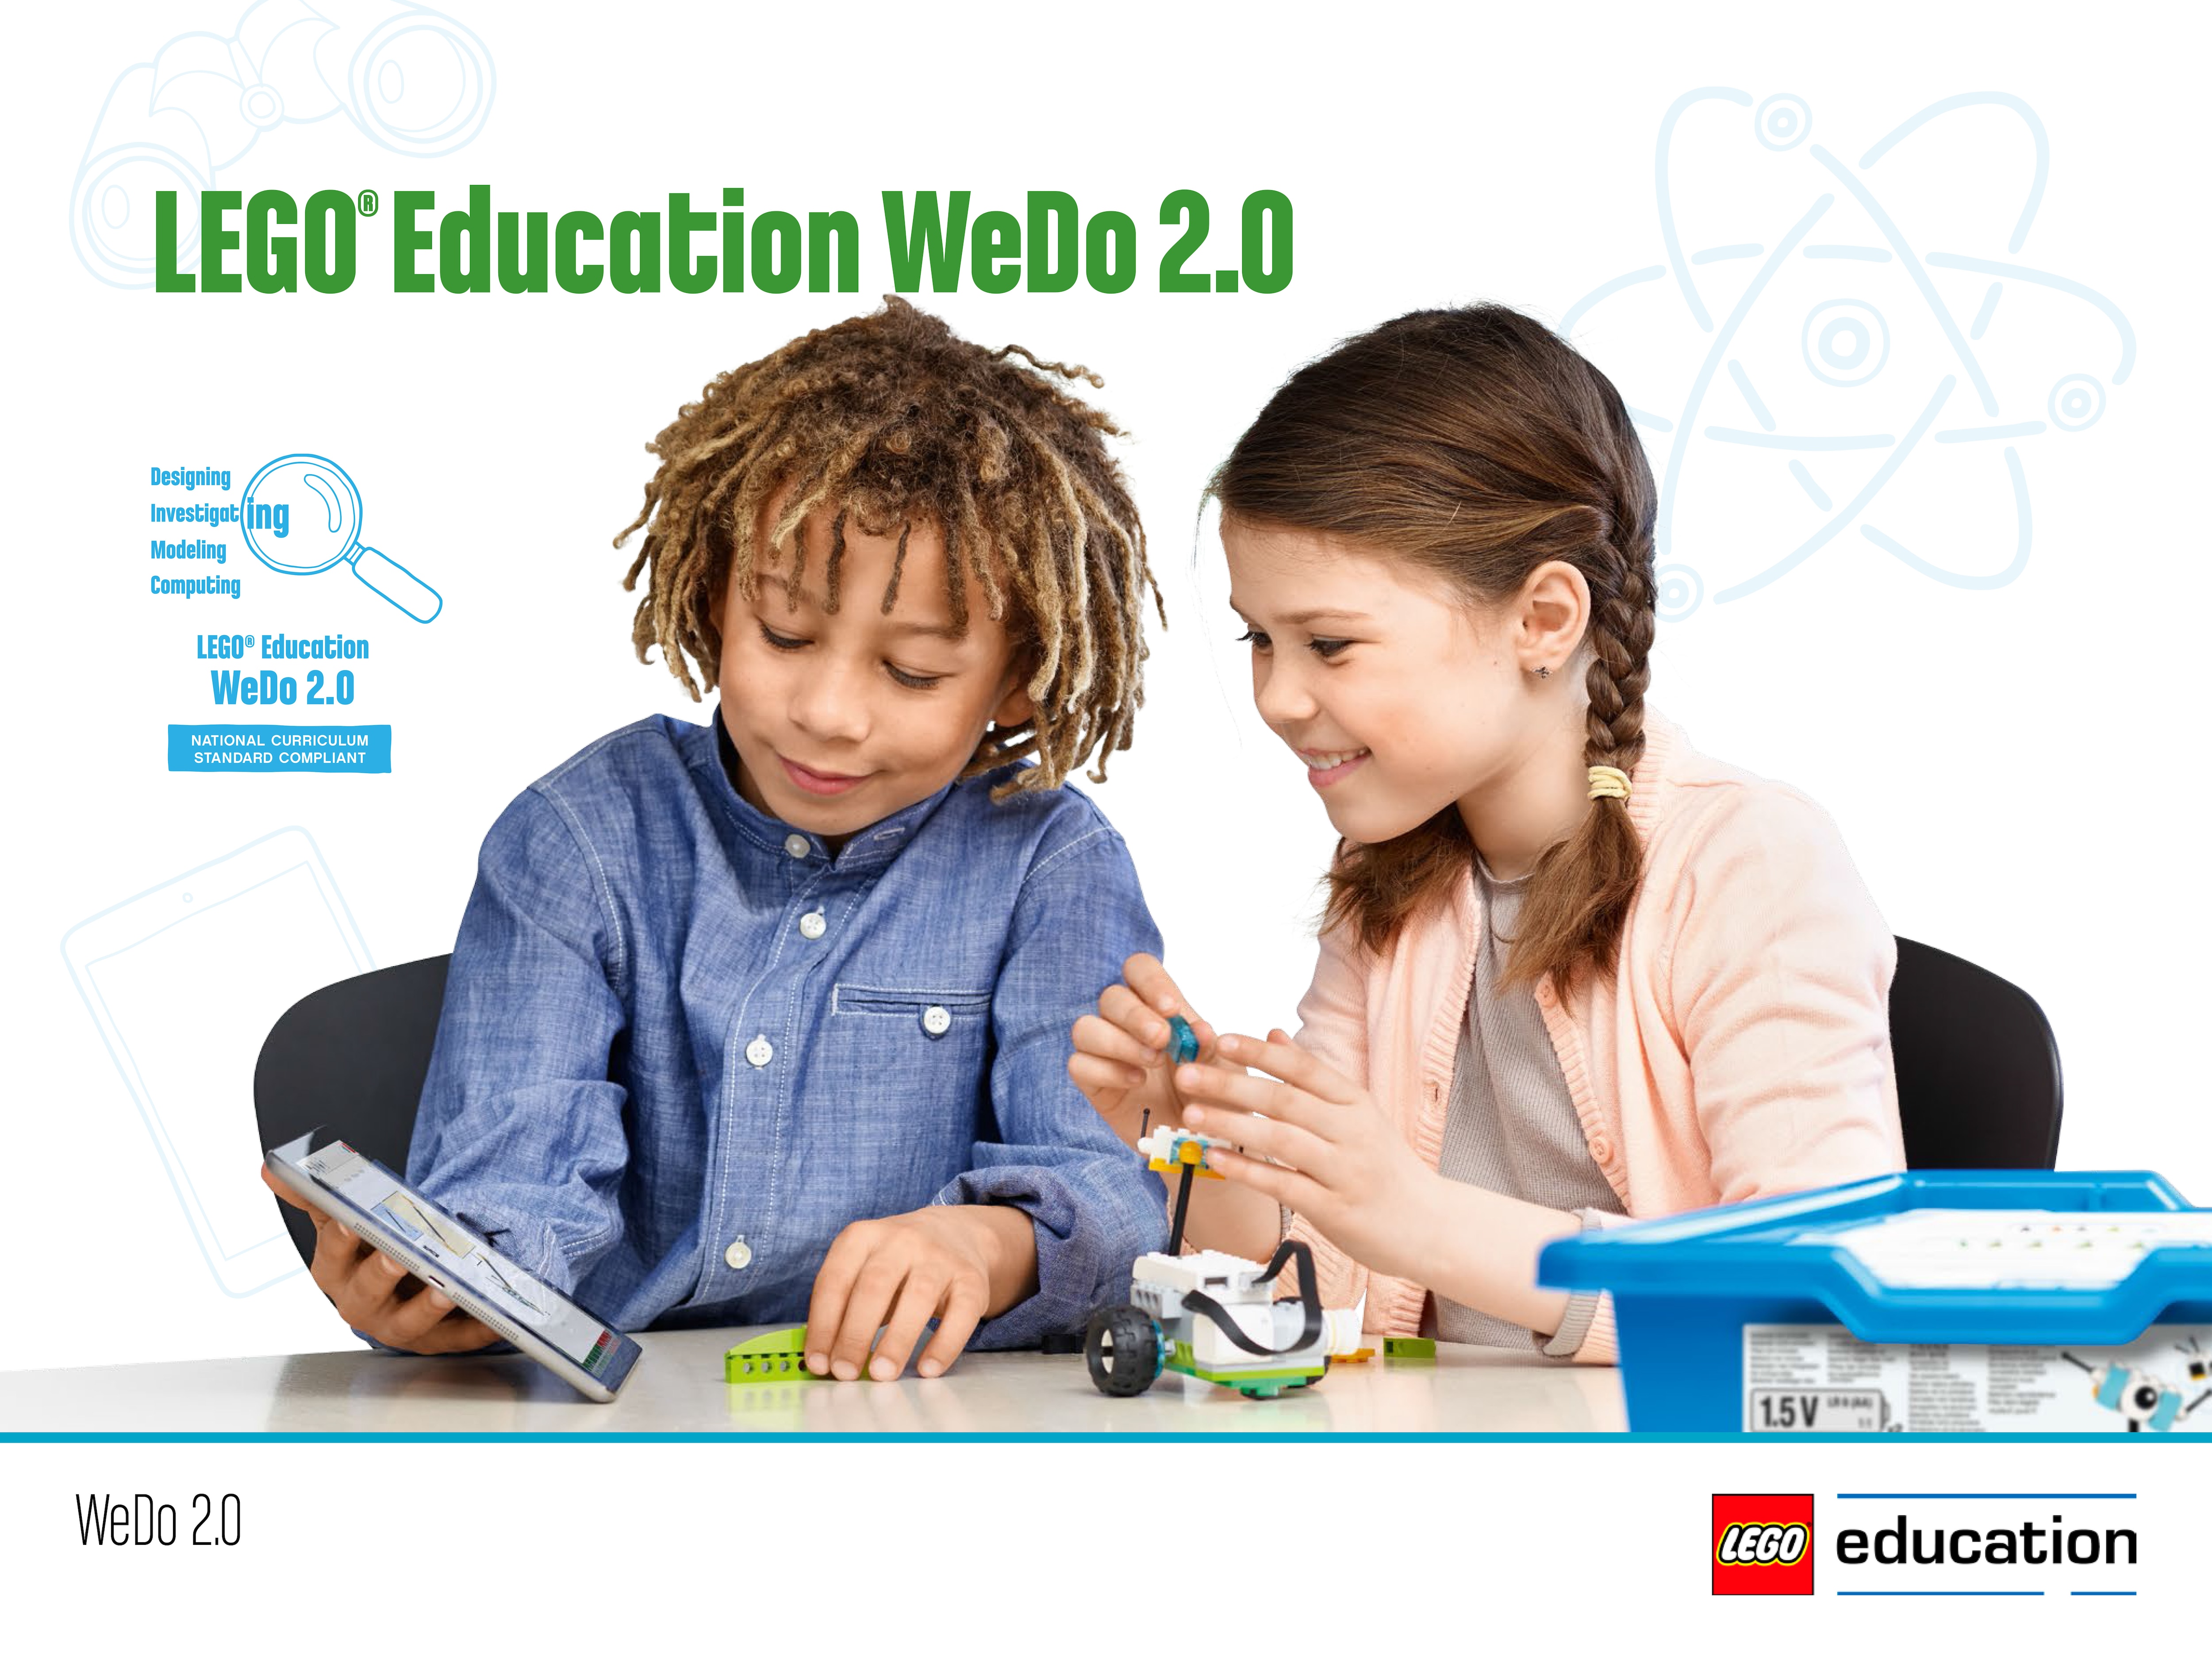 education lego wedo 2.0